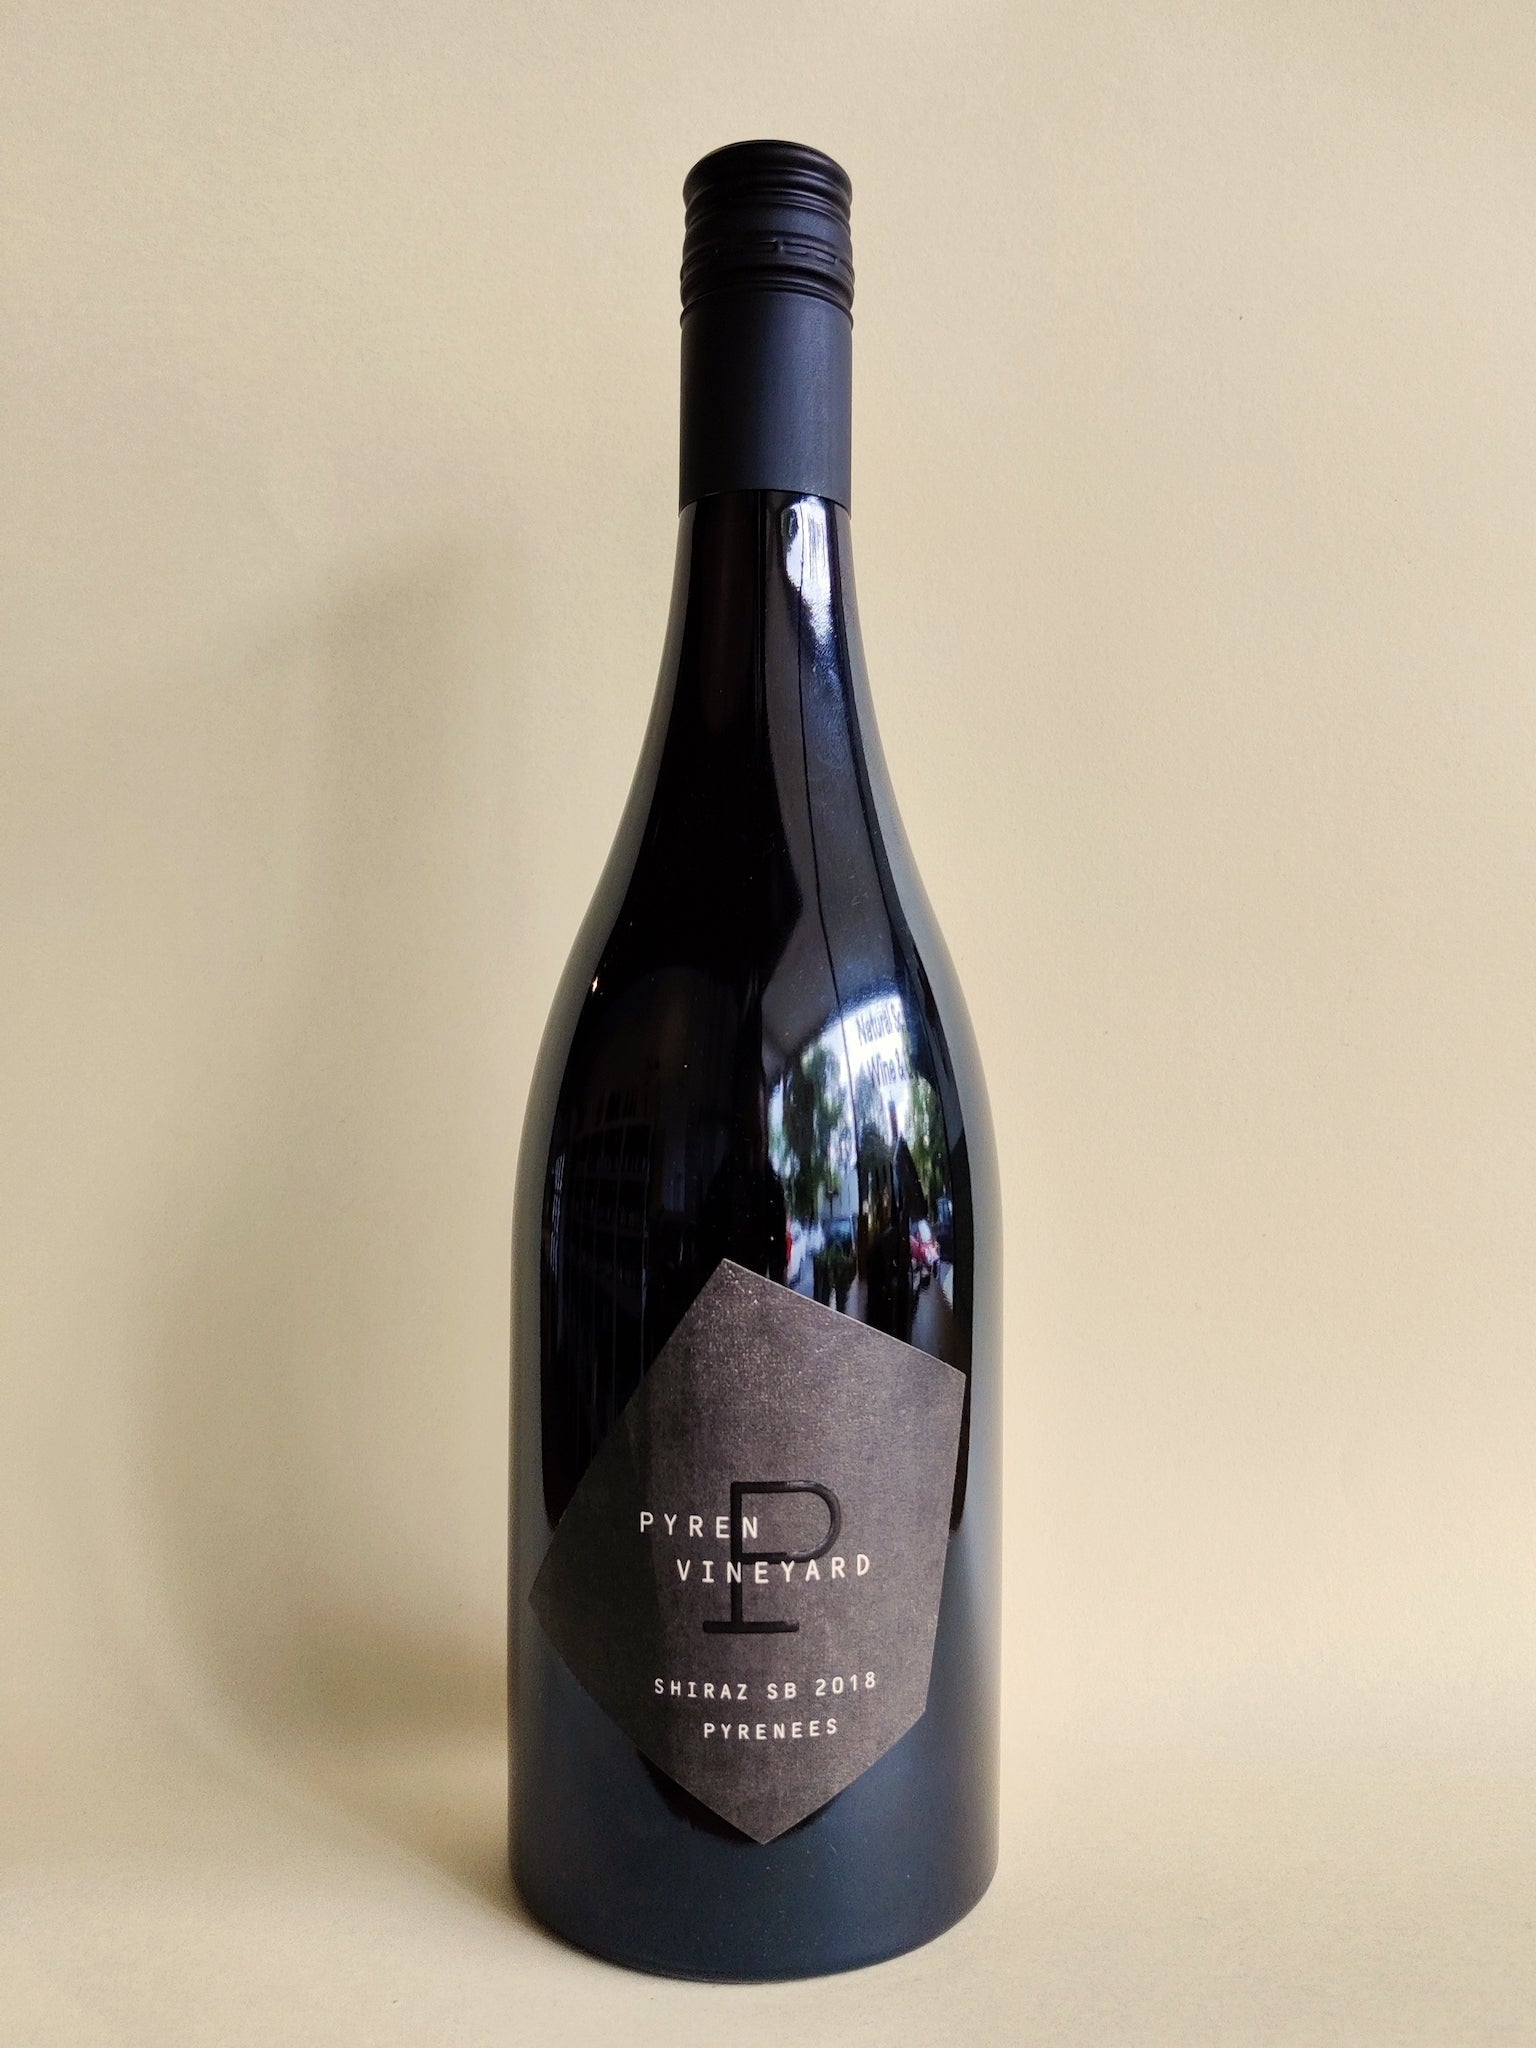 A bottle of Pyren Vineyard Shiraz/Sauvignon Blanc from the Pyrenees, Victoria.